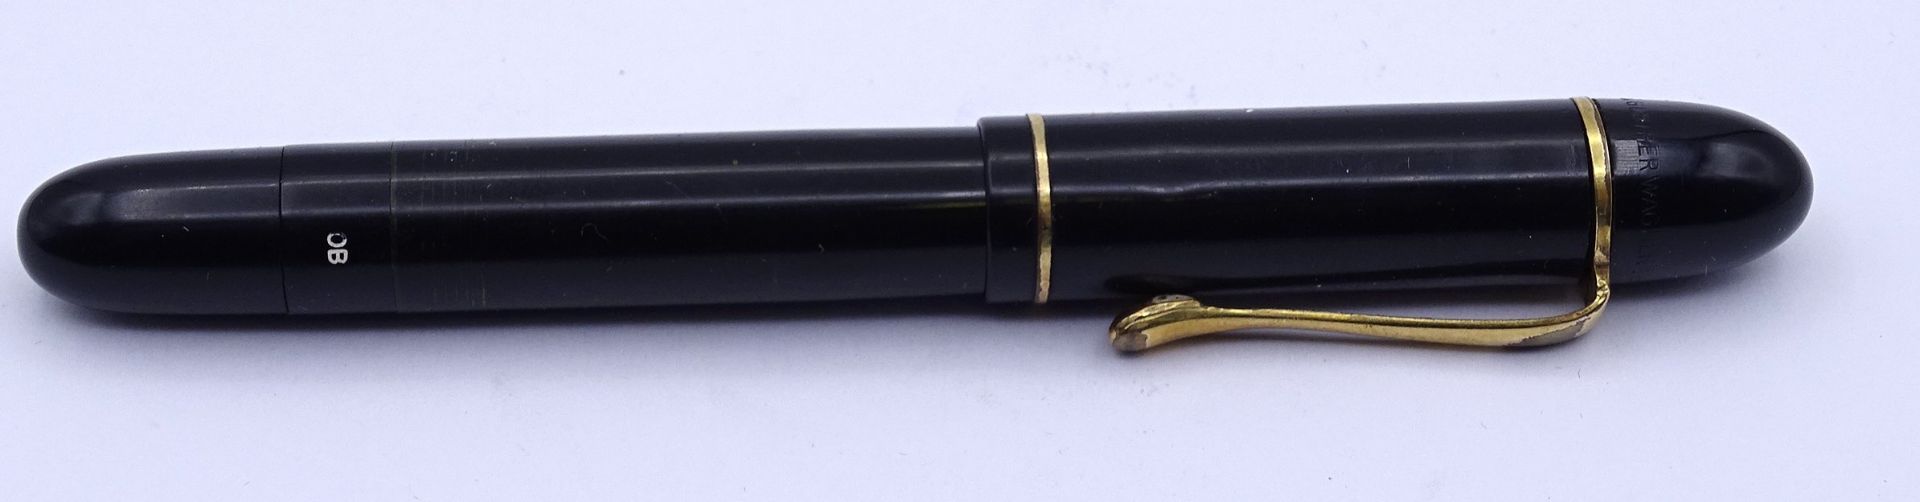 Pelikan Füller, GG Feder 0.585 OB, Gesamtlänge L. 12,2cm, Alters- und Gebrauchsspuren - Image 4 of 5